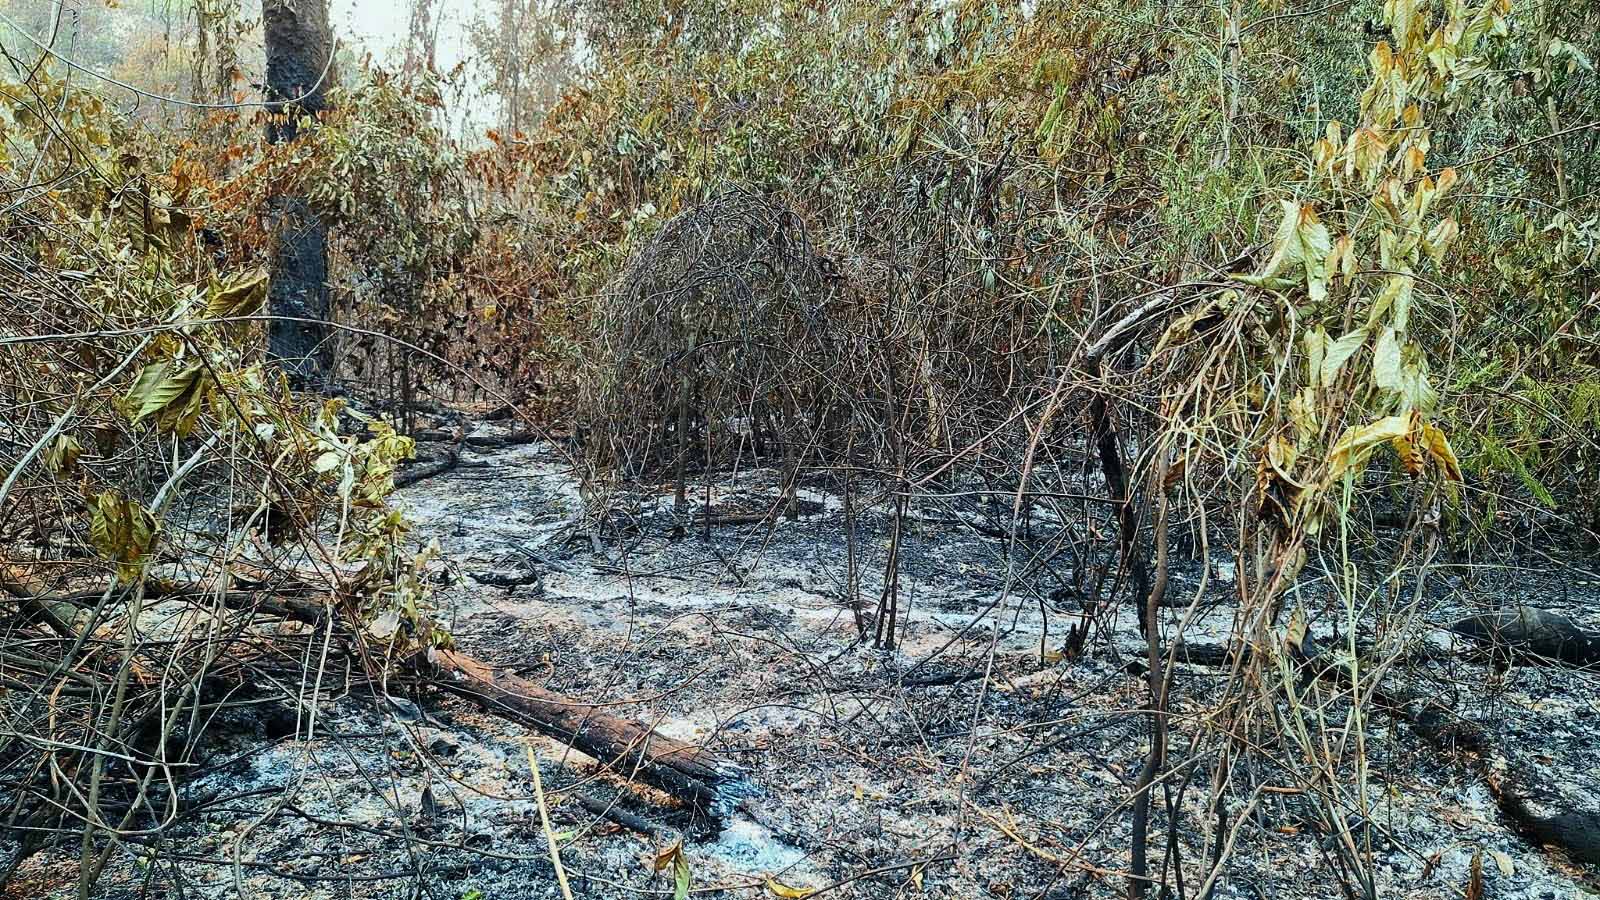 Plantação queimada na TI Yanomami: Roraima representou 40% do total queimado no país em janeiro (Foto: Associação Hutukara)